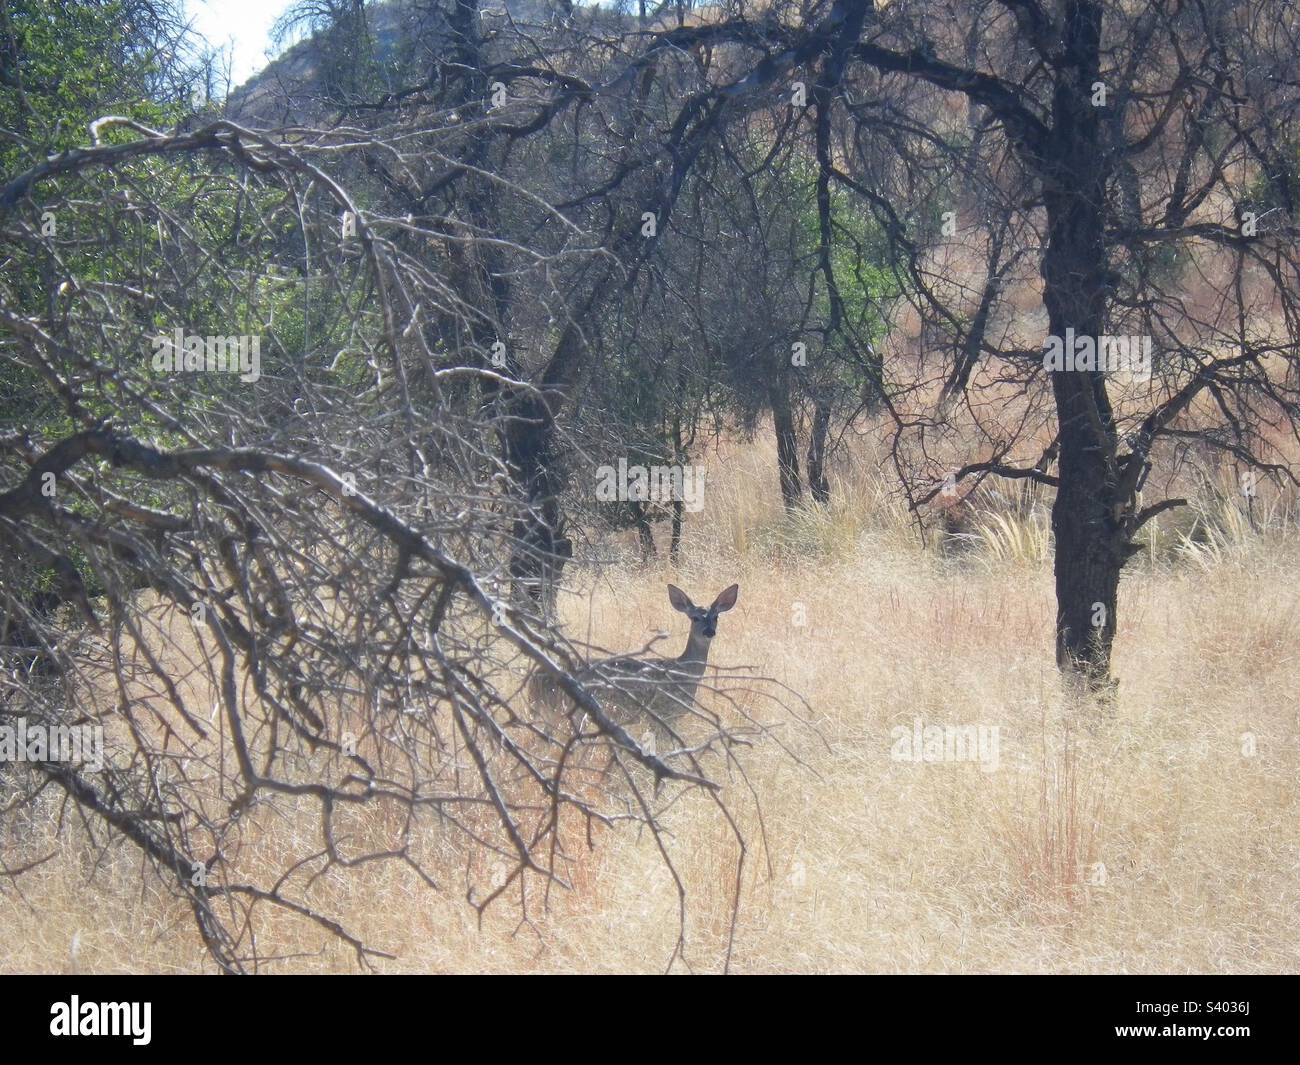 Cervi in piedi in erba secca, animale in ambiente deserto Foto Stock